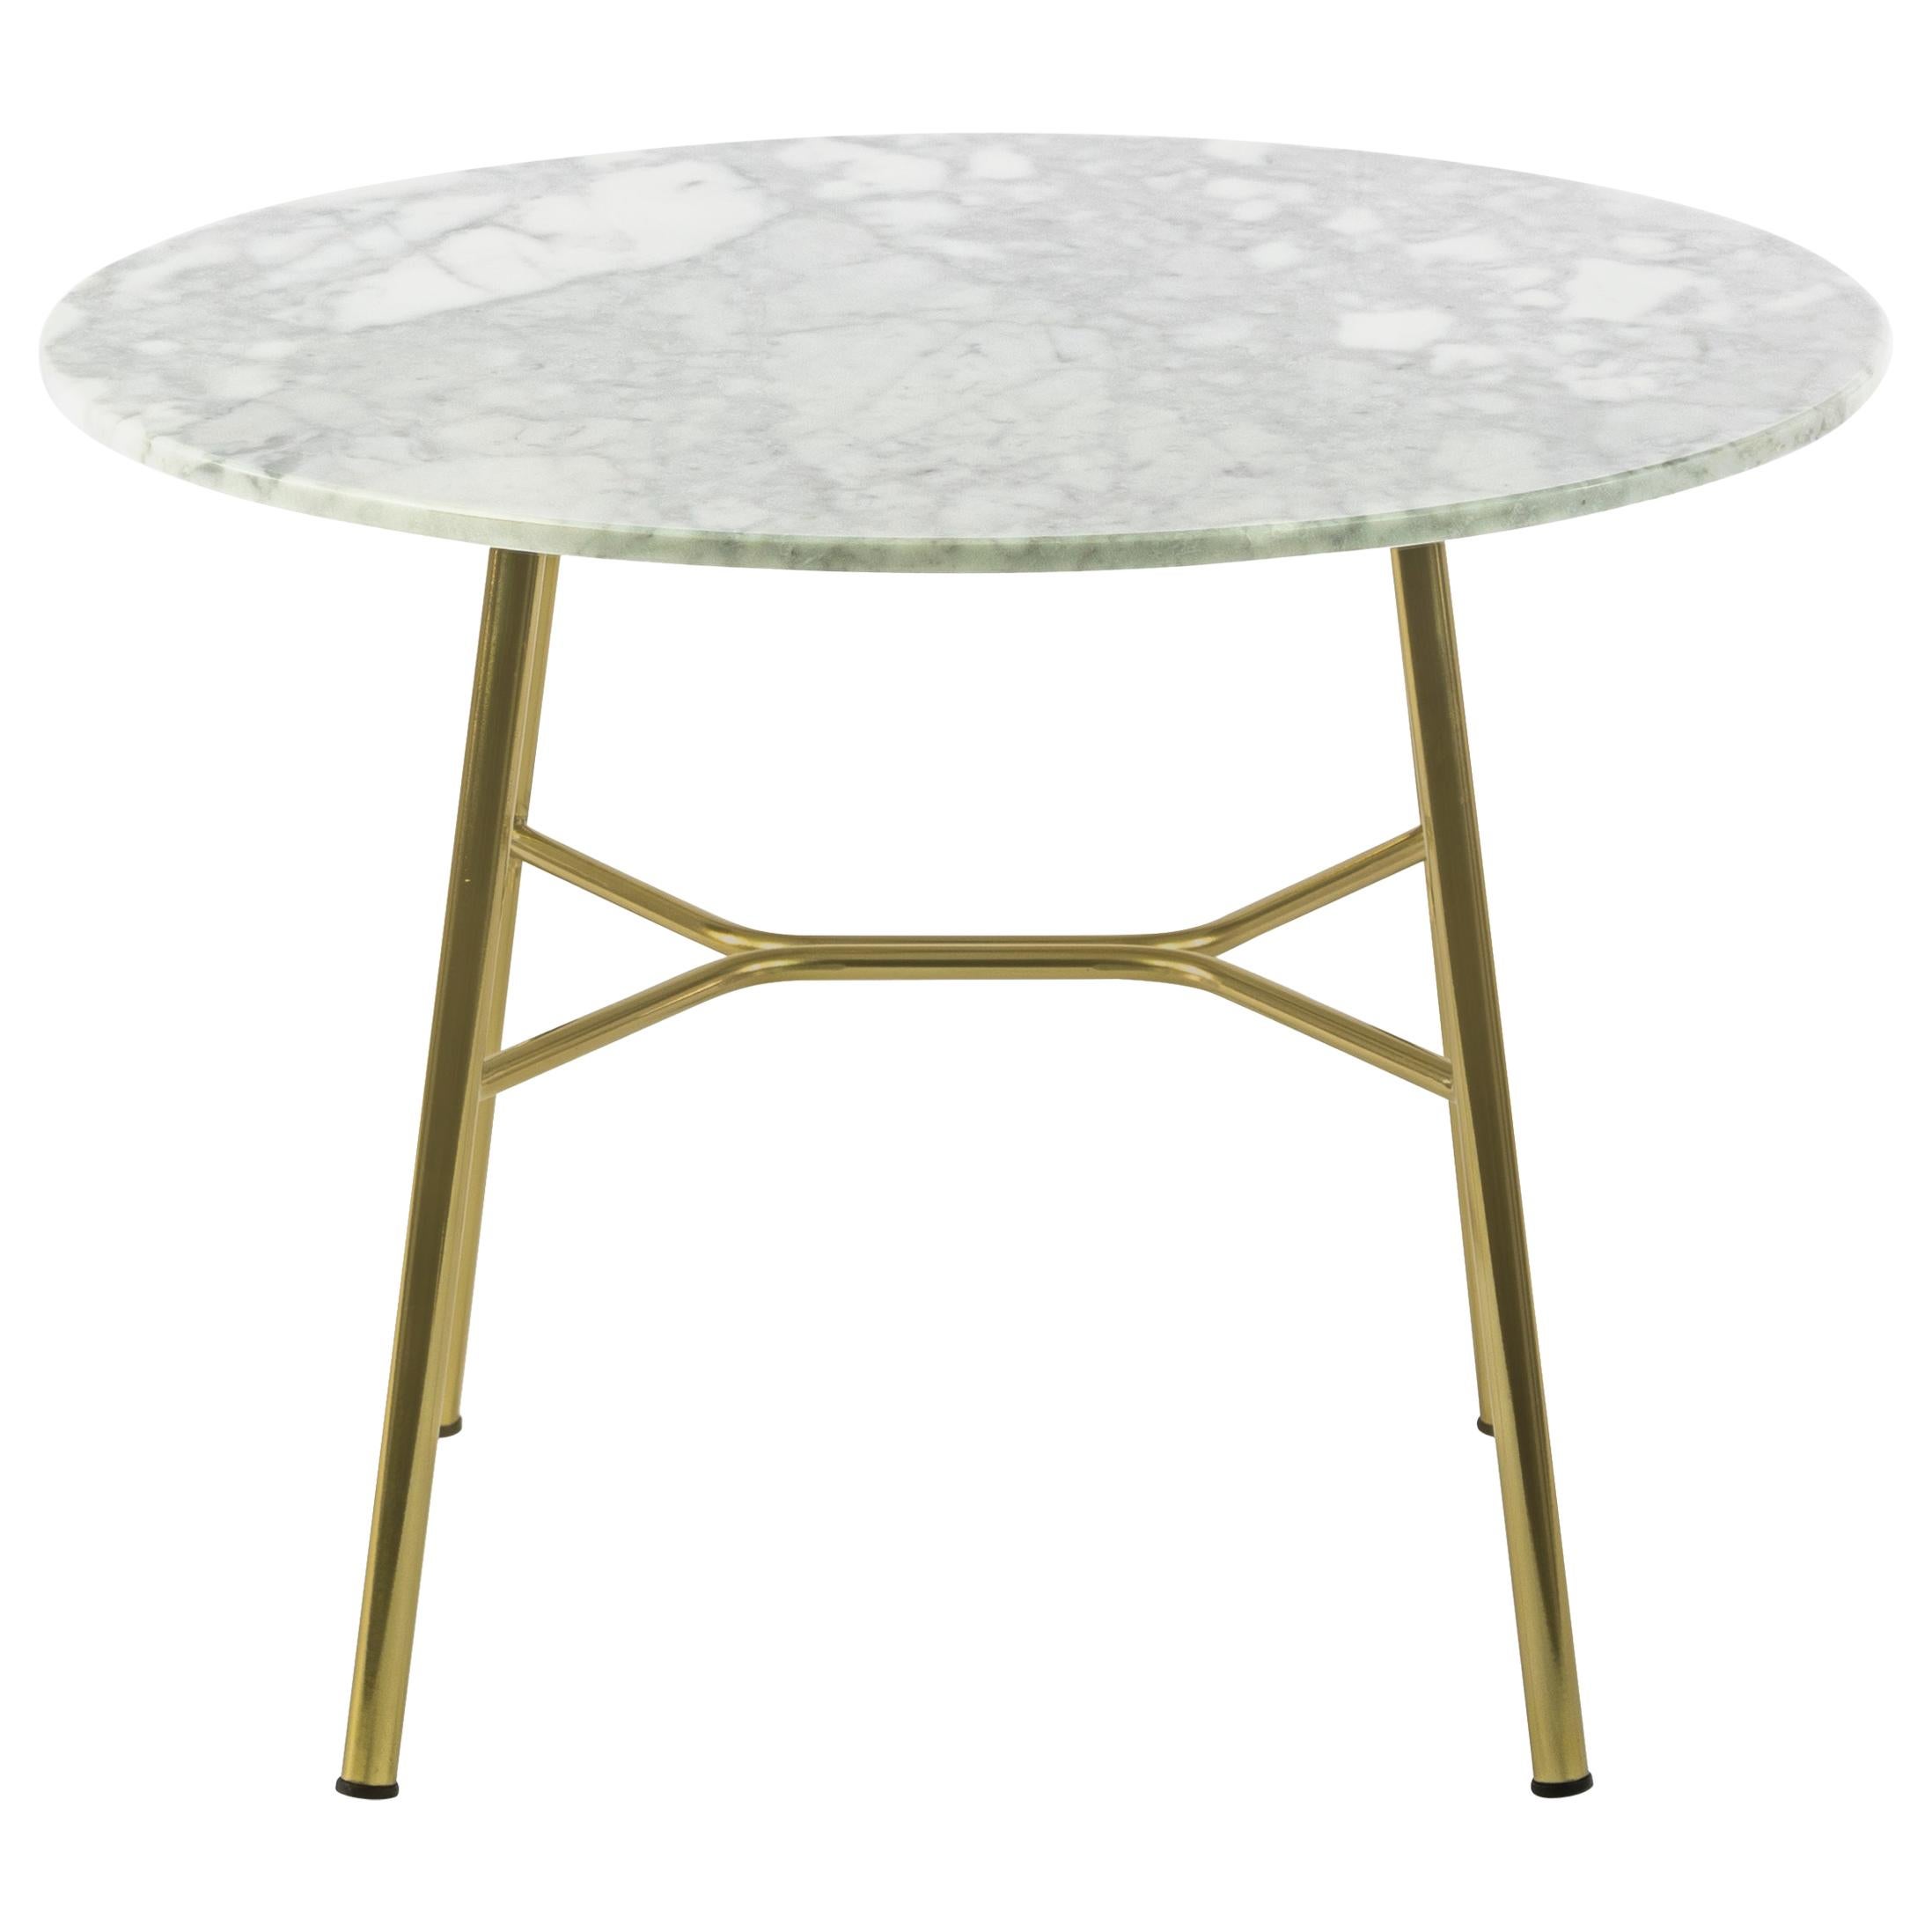 Petite table Yuki, cadre métallique, rond, couleur blanche, design, table basse, marbre